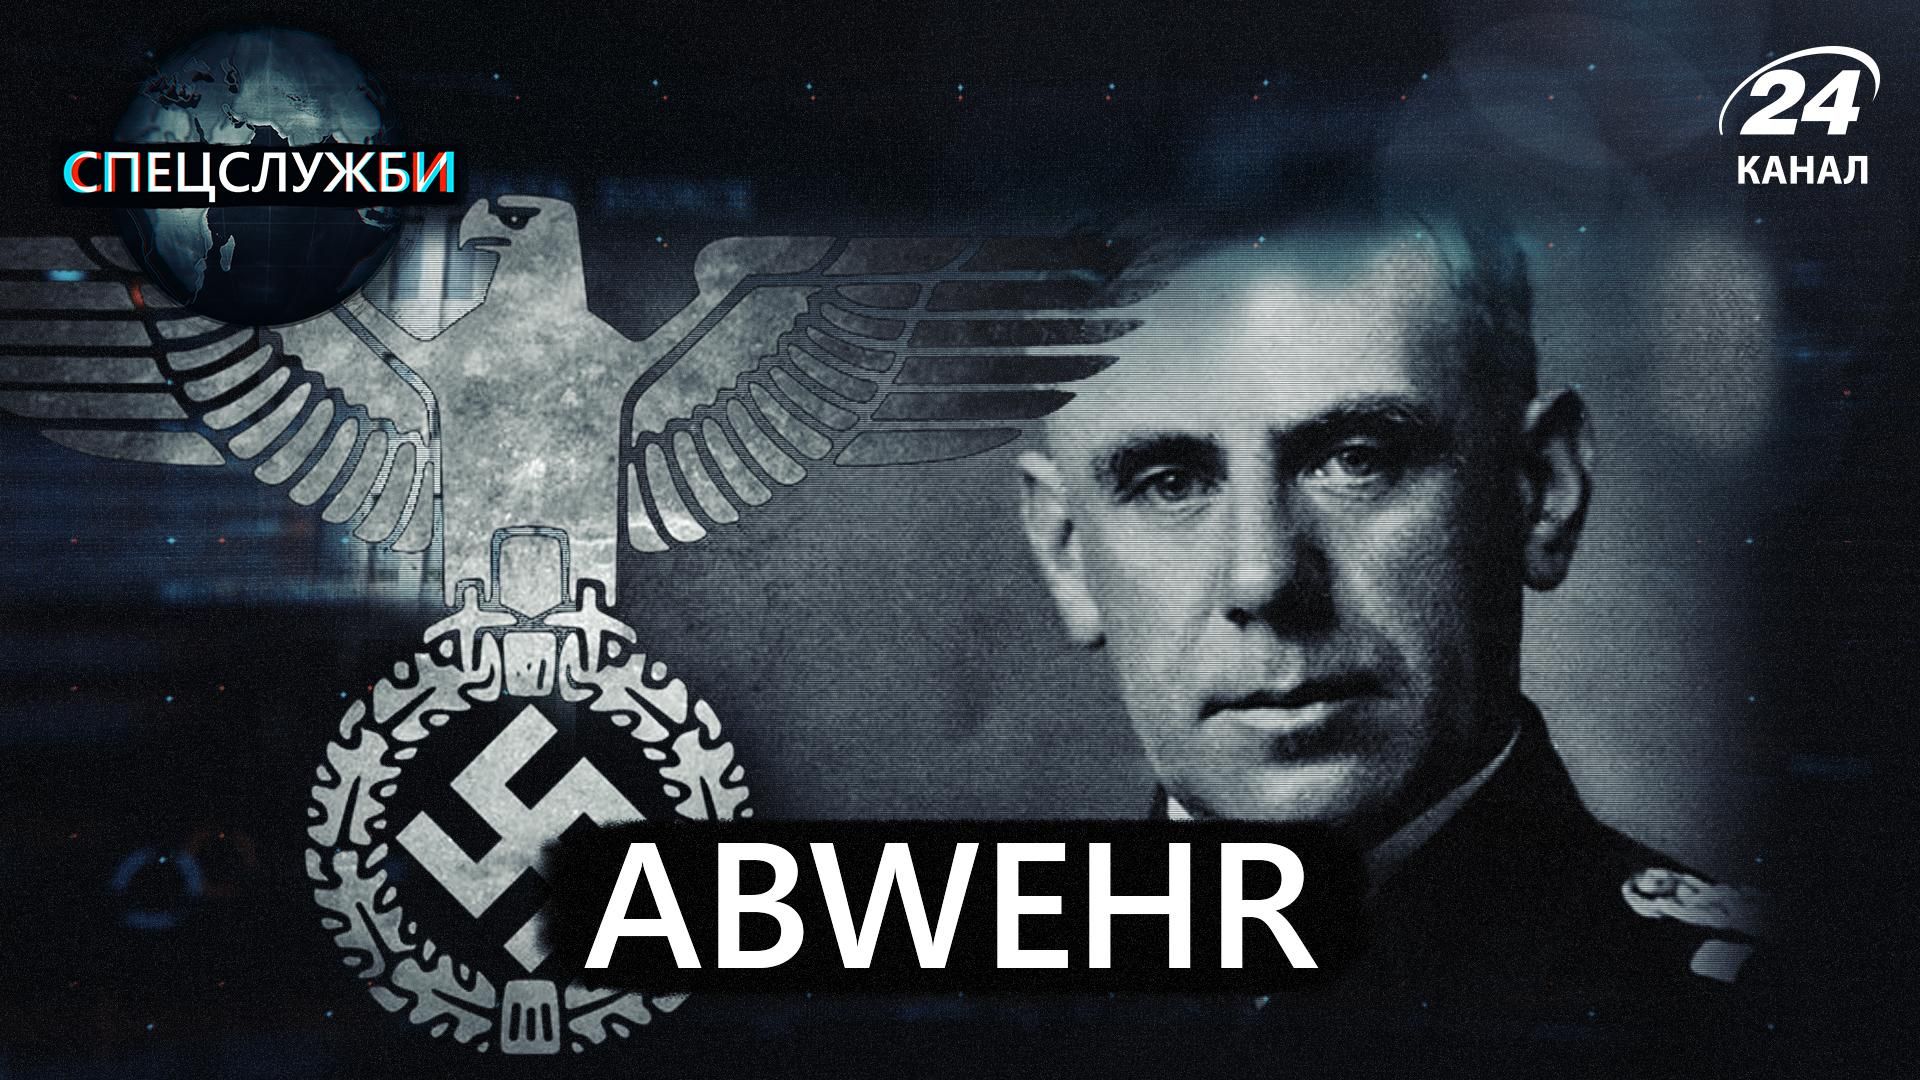 Абвер: фото та історія спецслужби нацистської Німеччини